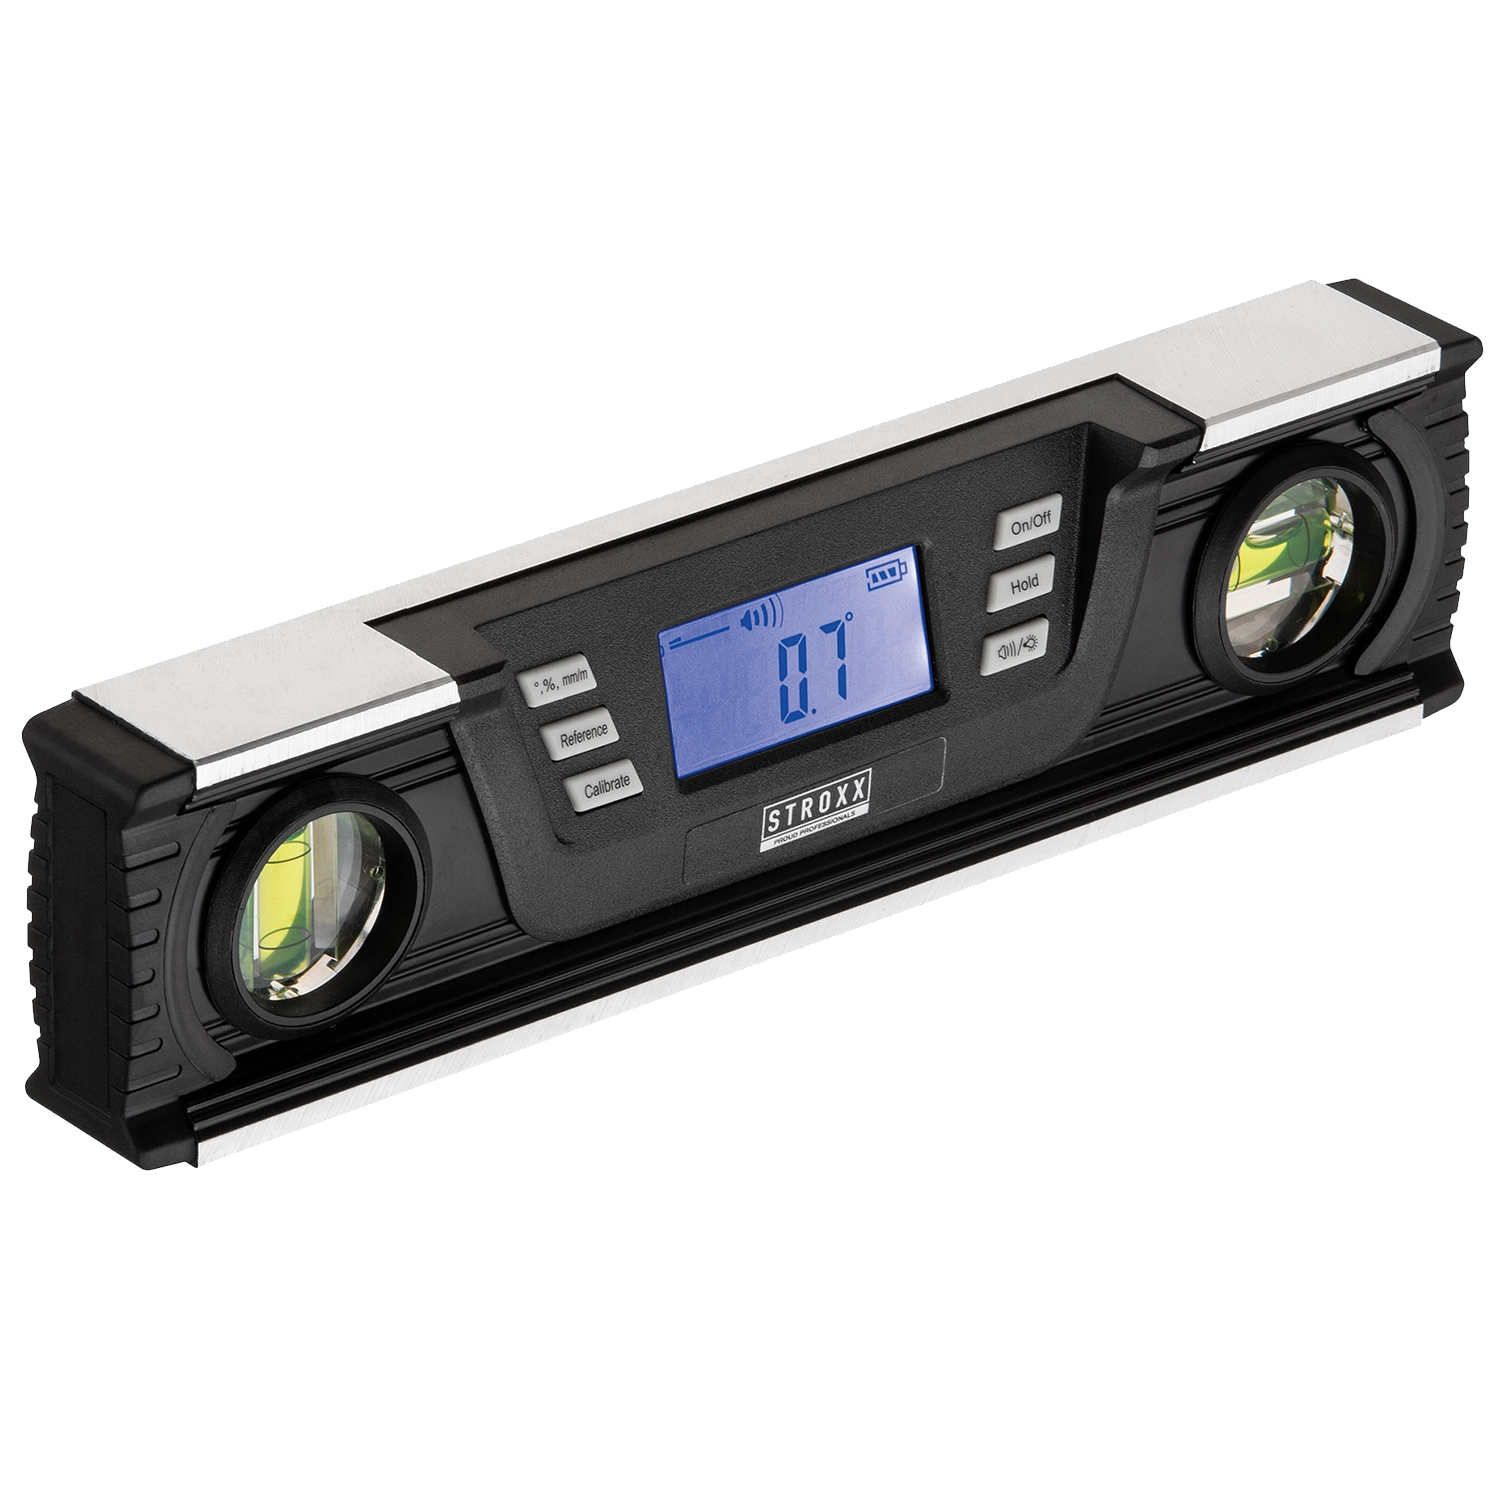 STROXX Digitale Waterpas 250MM: Een Waterpas met een geel handvat en een scherm om nauwkeurig de hoek te bepalen.